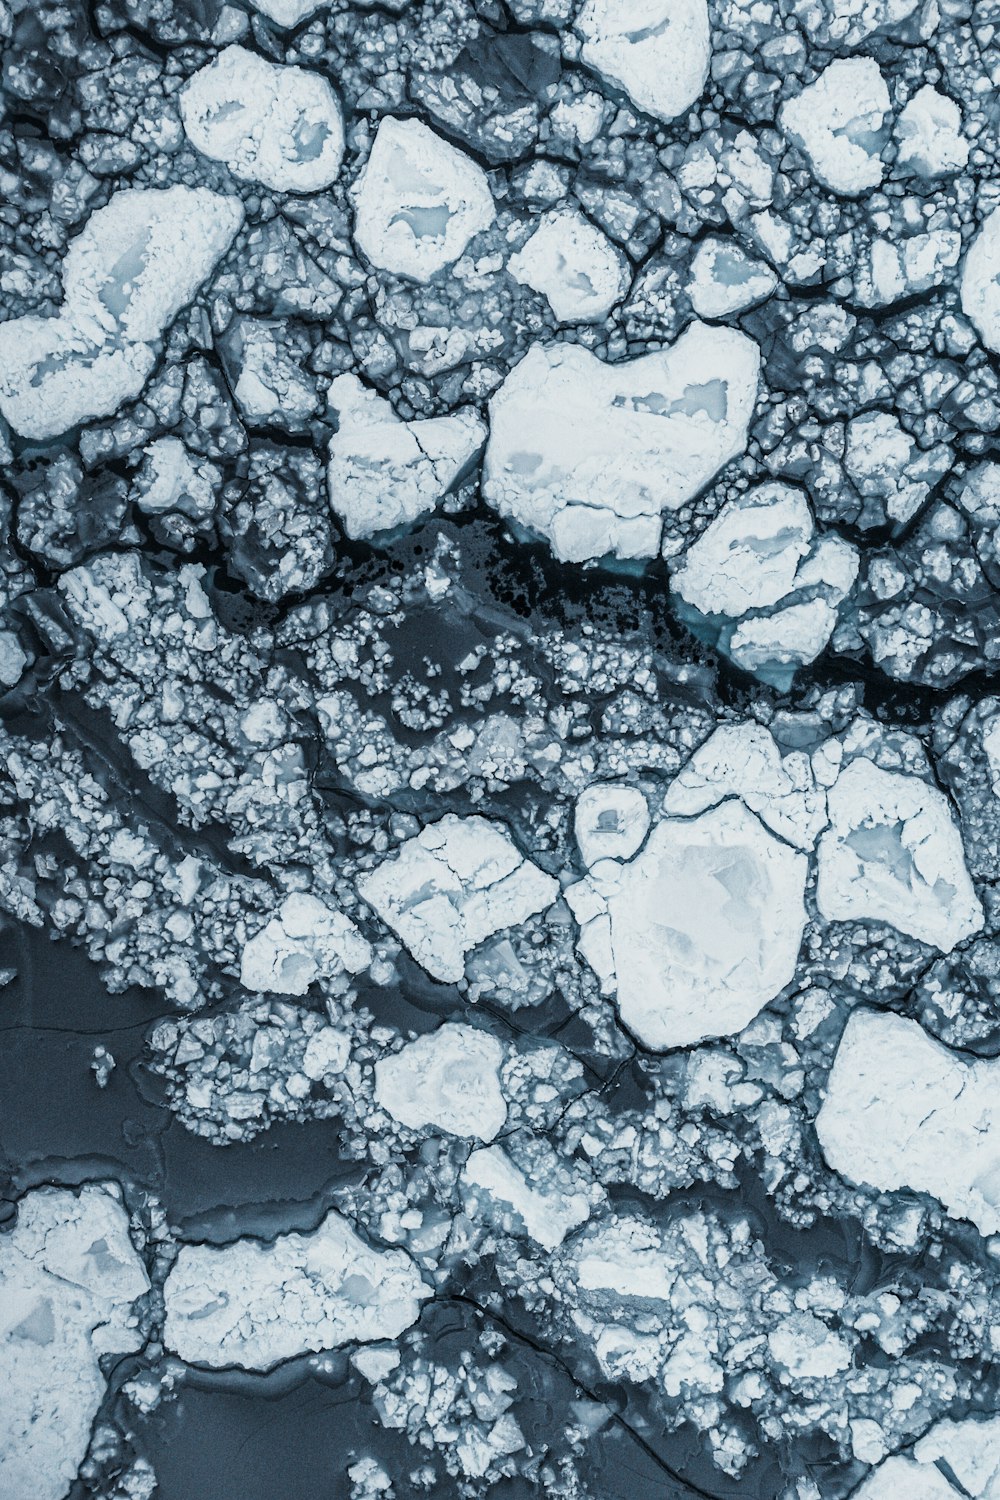 Una veduta aerea di banchi di ghiaccio che galleggiano nell'acqua